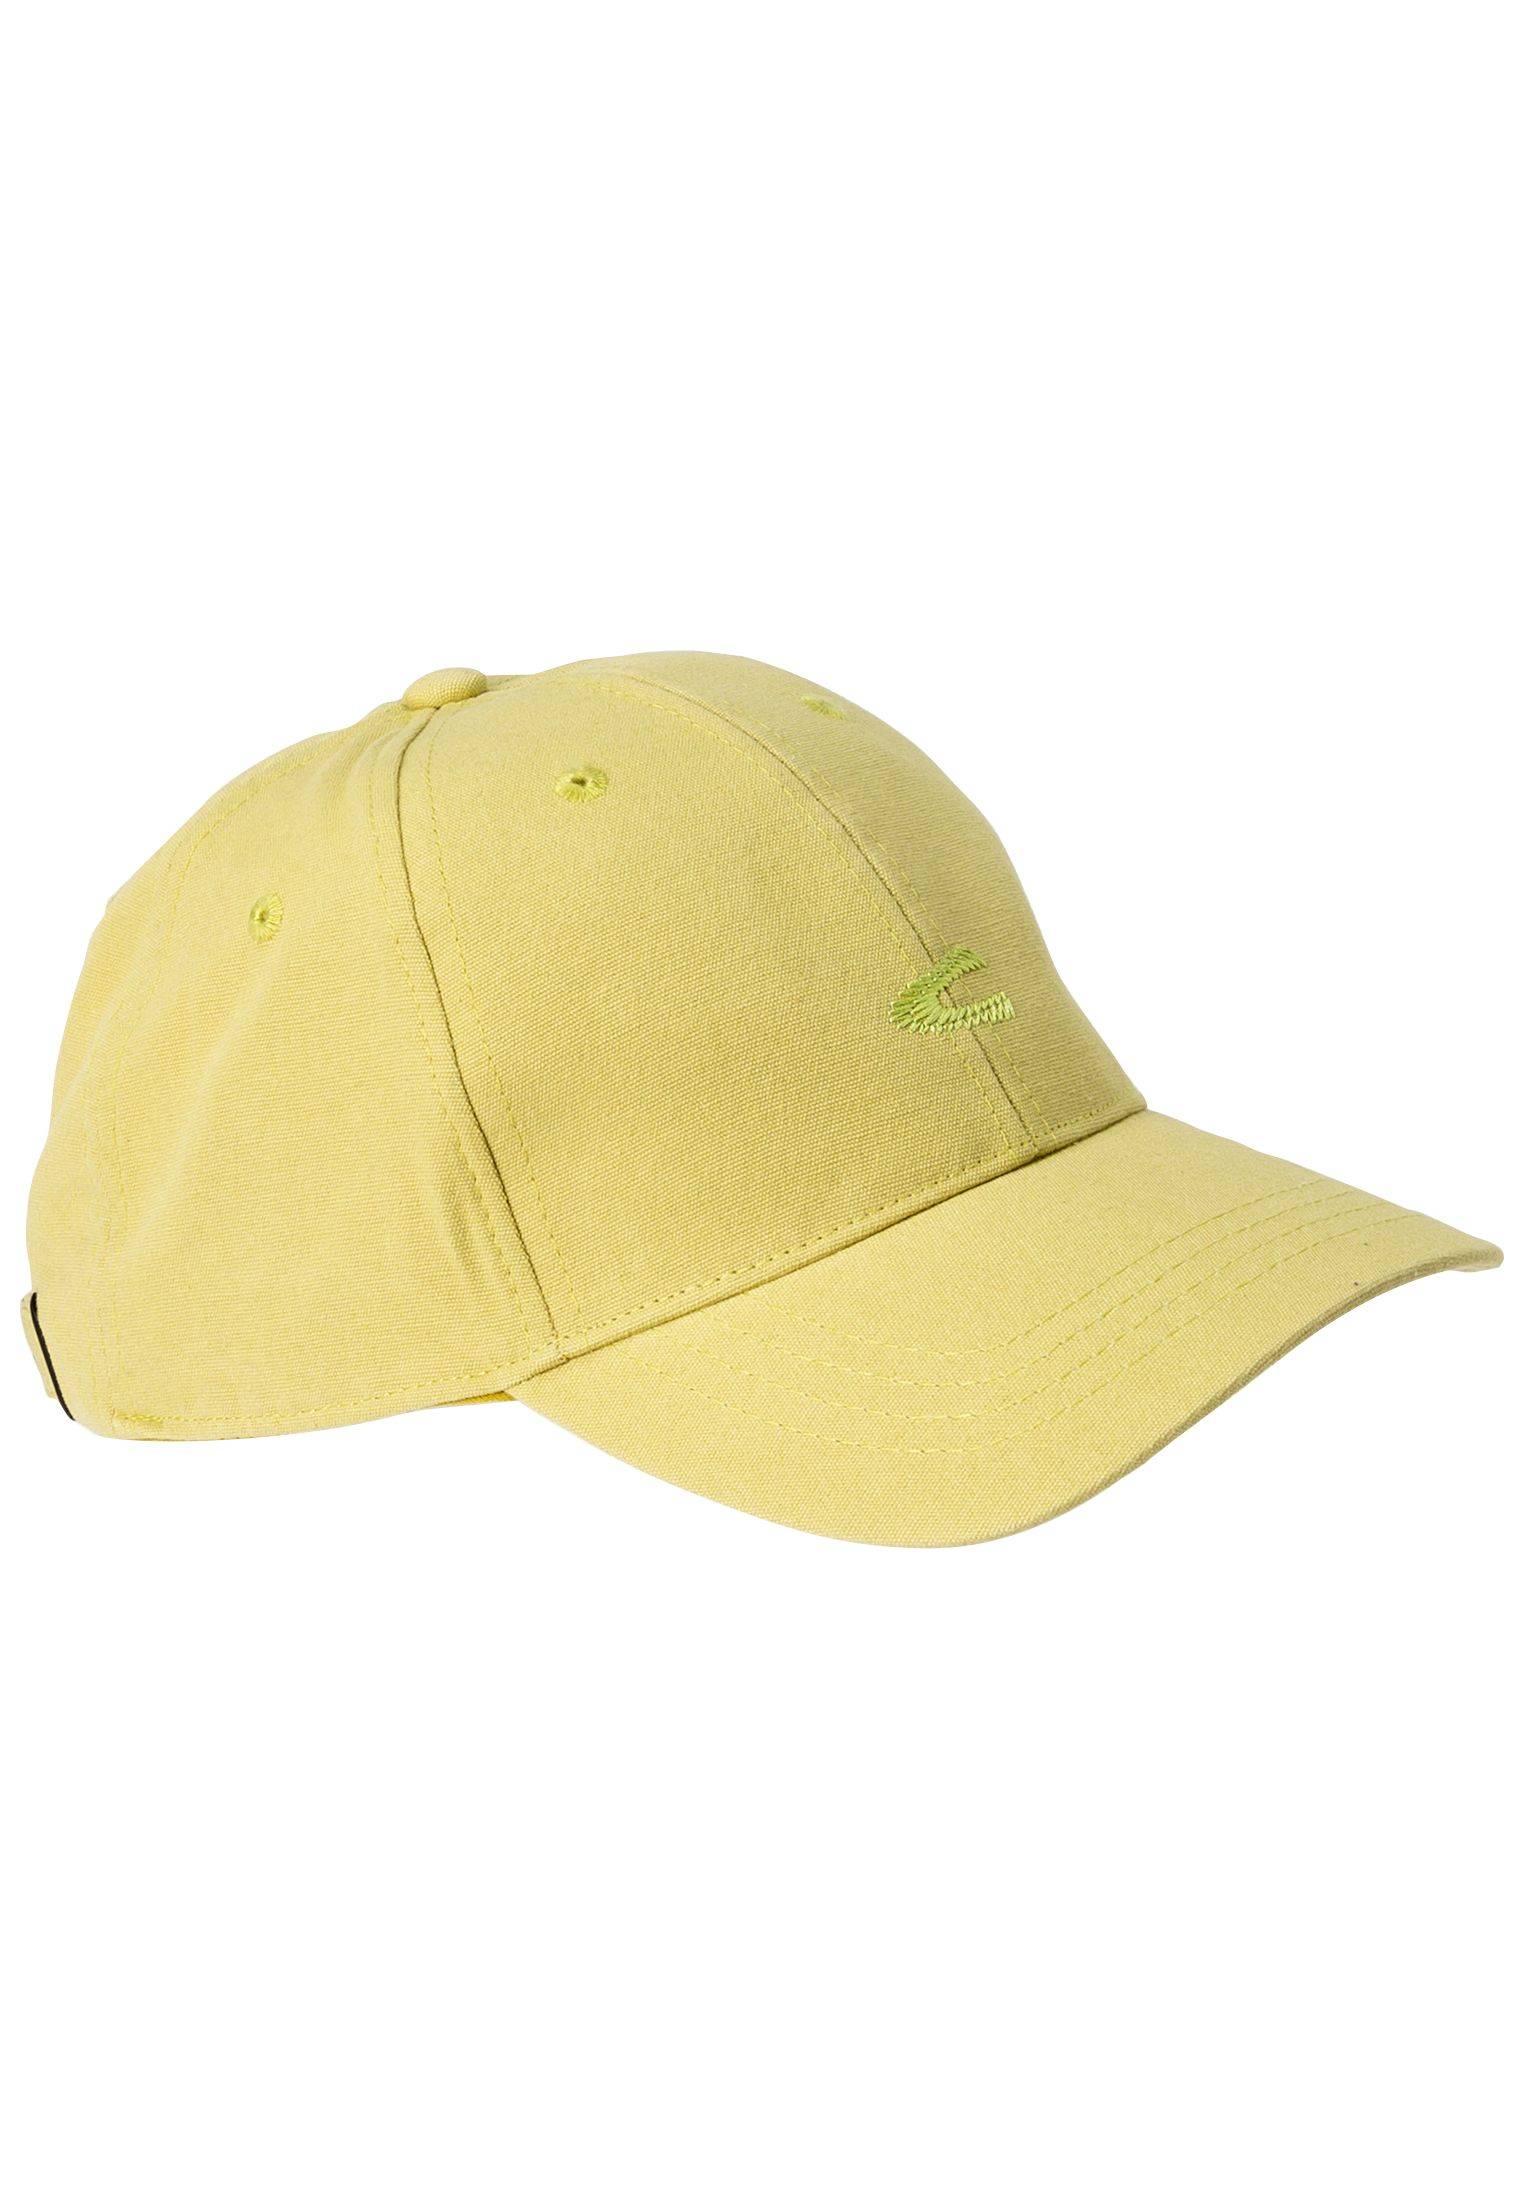 Мужская кепка Camel Active (Baseball cap 4062305C23), оливковая, цвет оливковый, размер O/S - фото 2